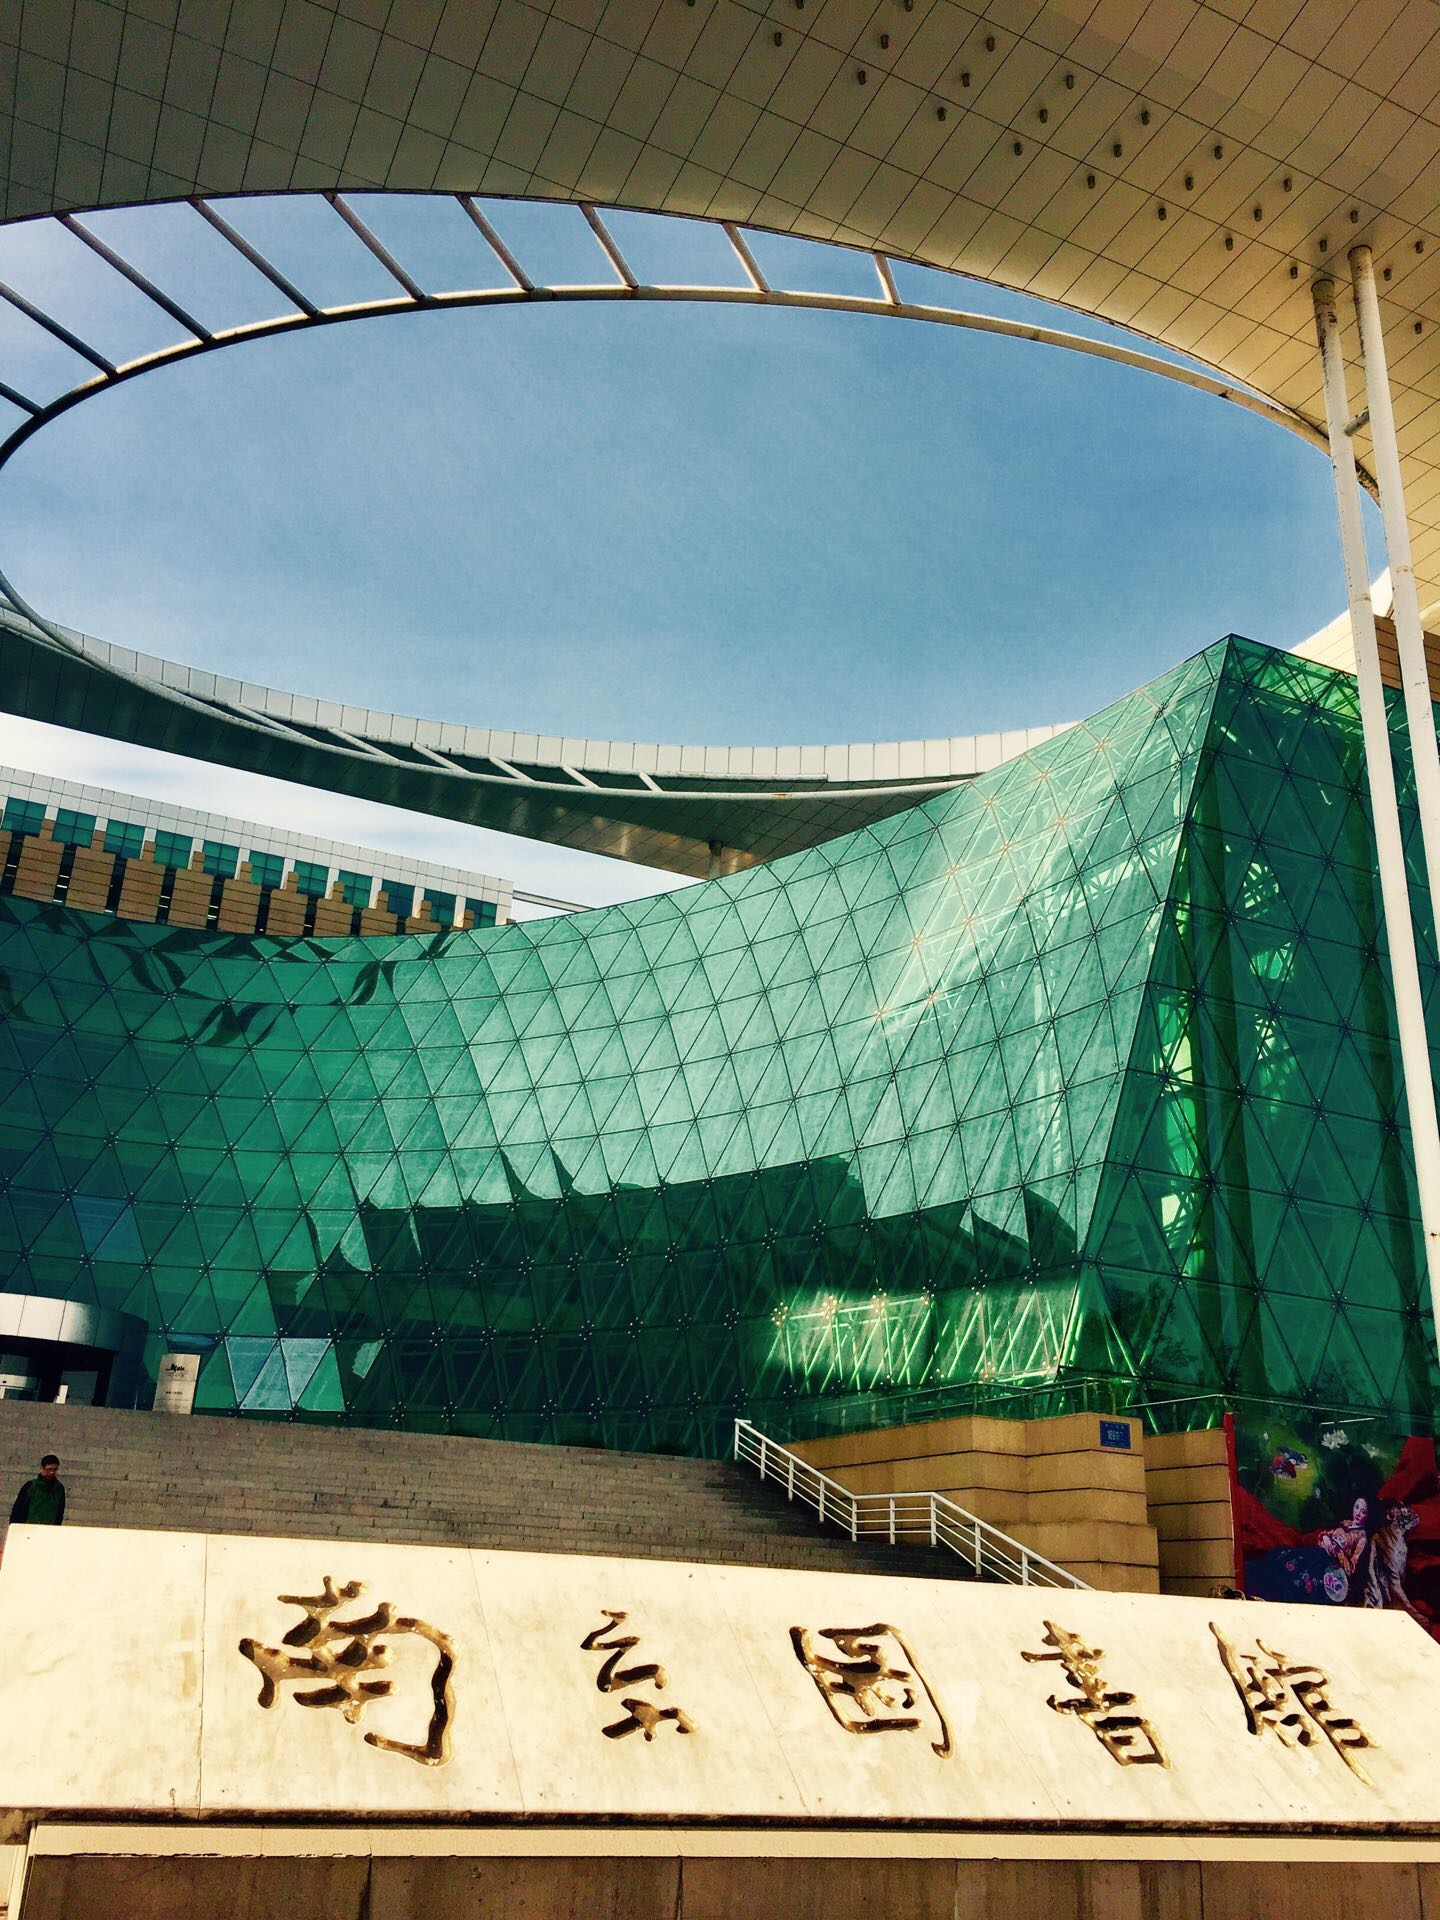 南京图书馆，简称南图，是中国第三大图书馆、亚洲第四大图书馆，首批全国古籍重点保护单位，国家一级图书馆